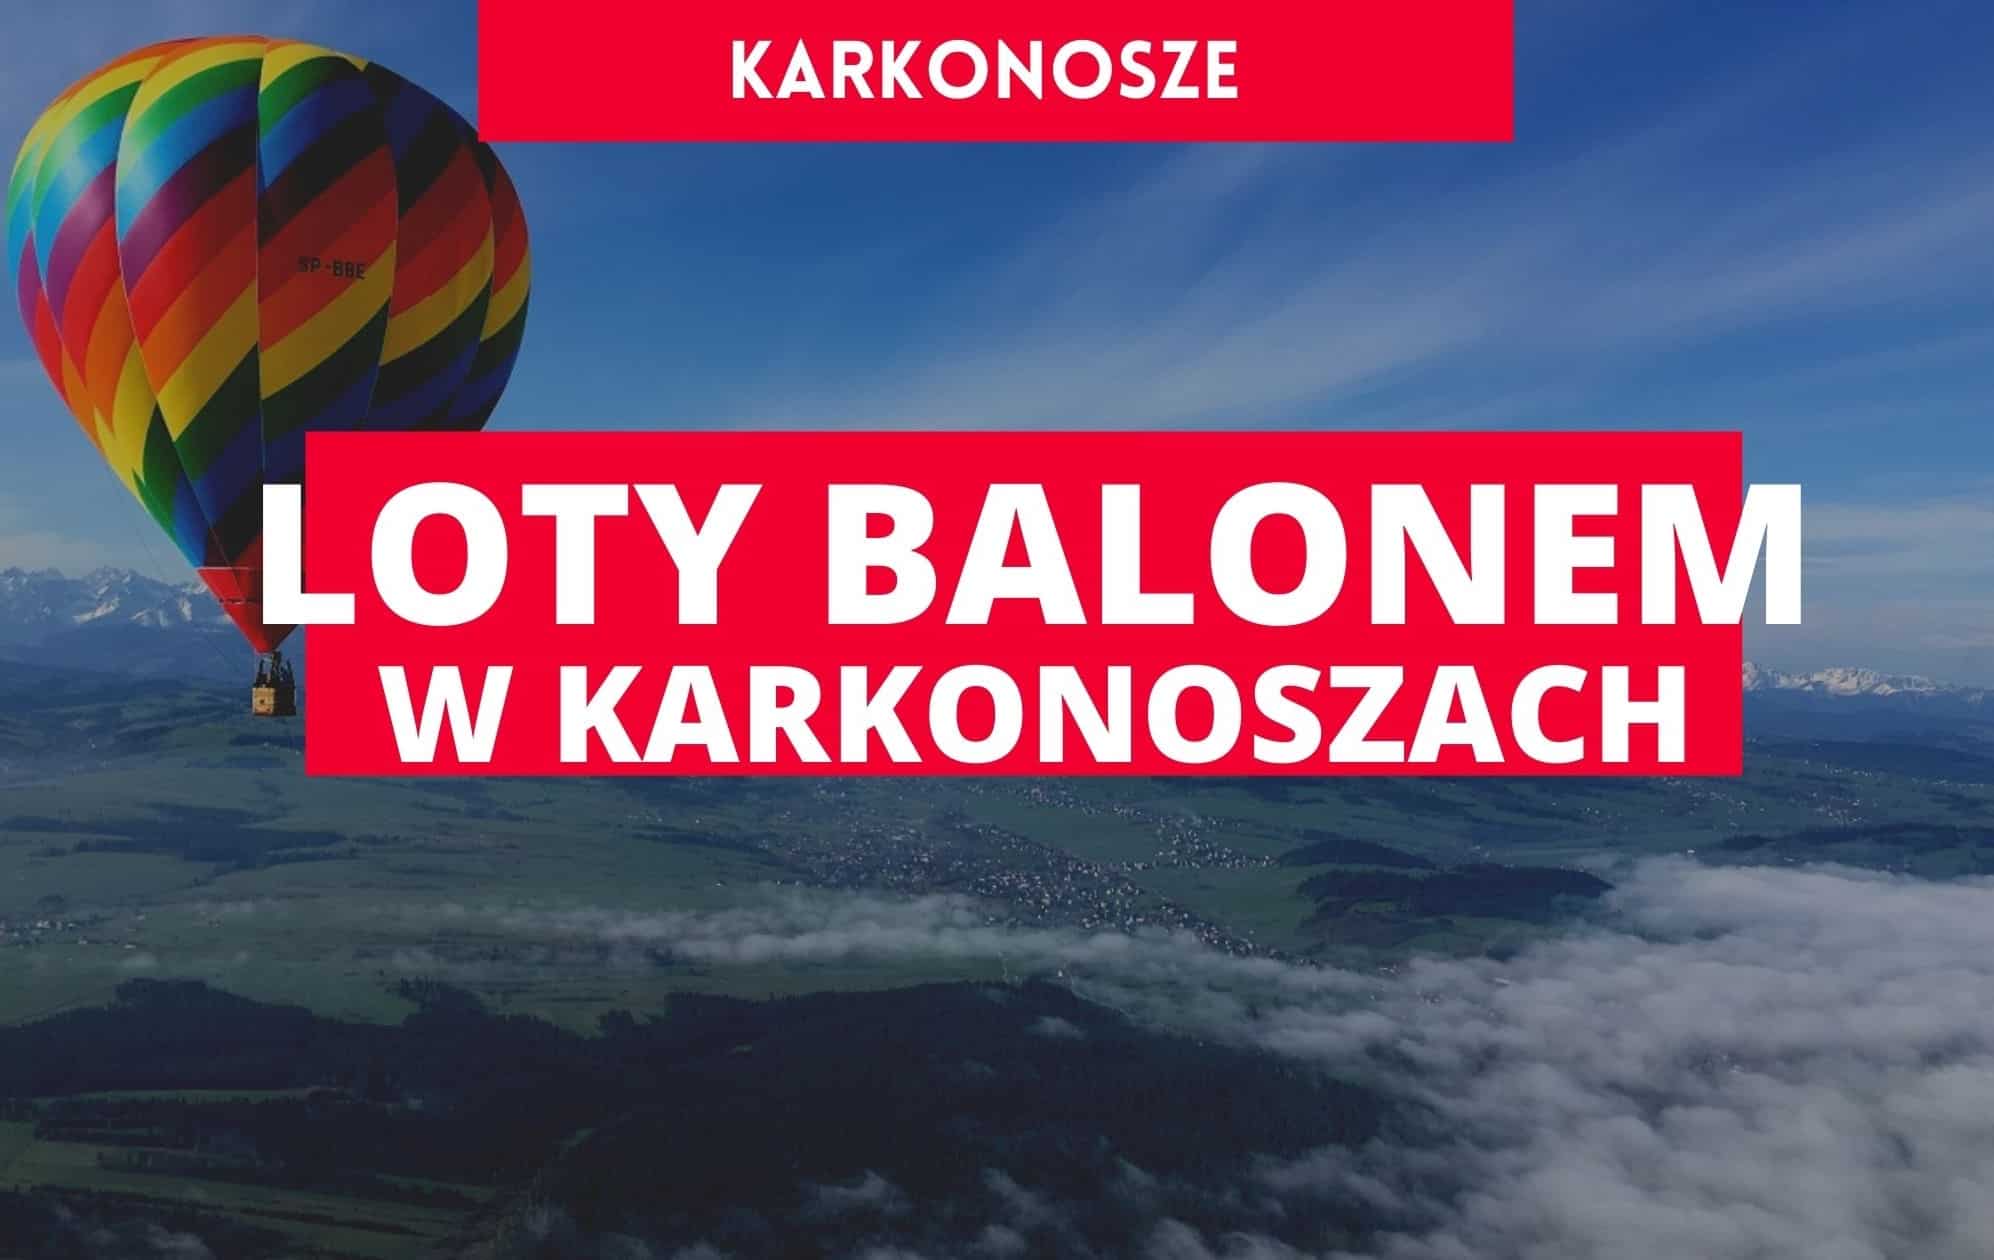 balloon expedition, dolny śląsk atrakcje turystyczne, lot balonem wrocław, lot balonem dolny śląsk, lot balonem karkonosze, wrocław atrakcje turystyczne, dolny śląsk atrakcje turystyczne, wakacje w polsce, turystyka w polsce